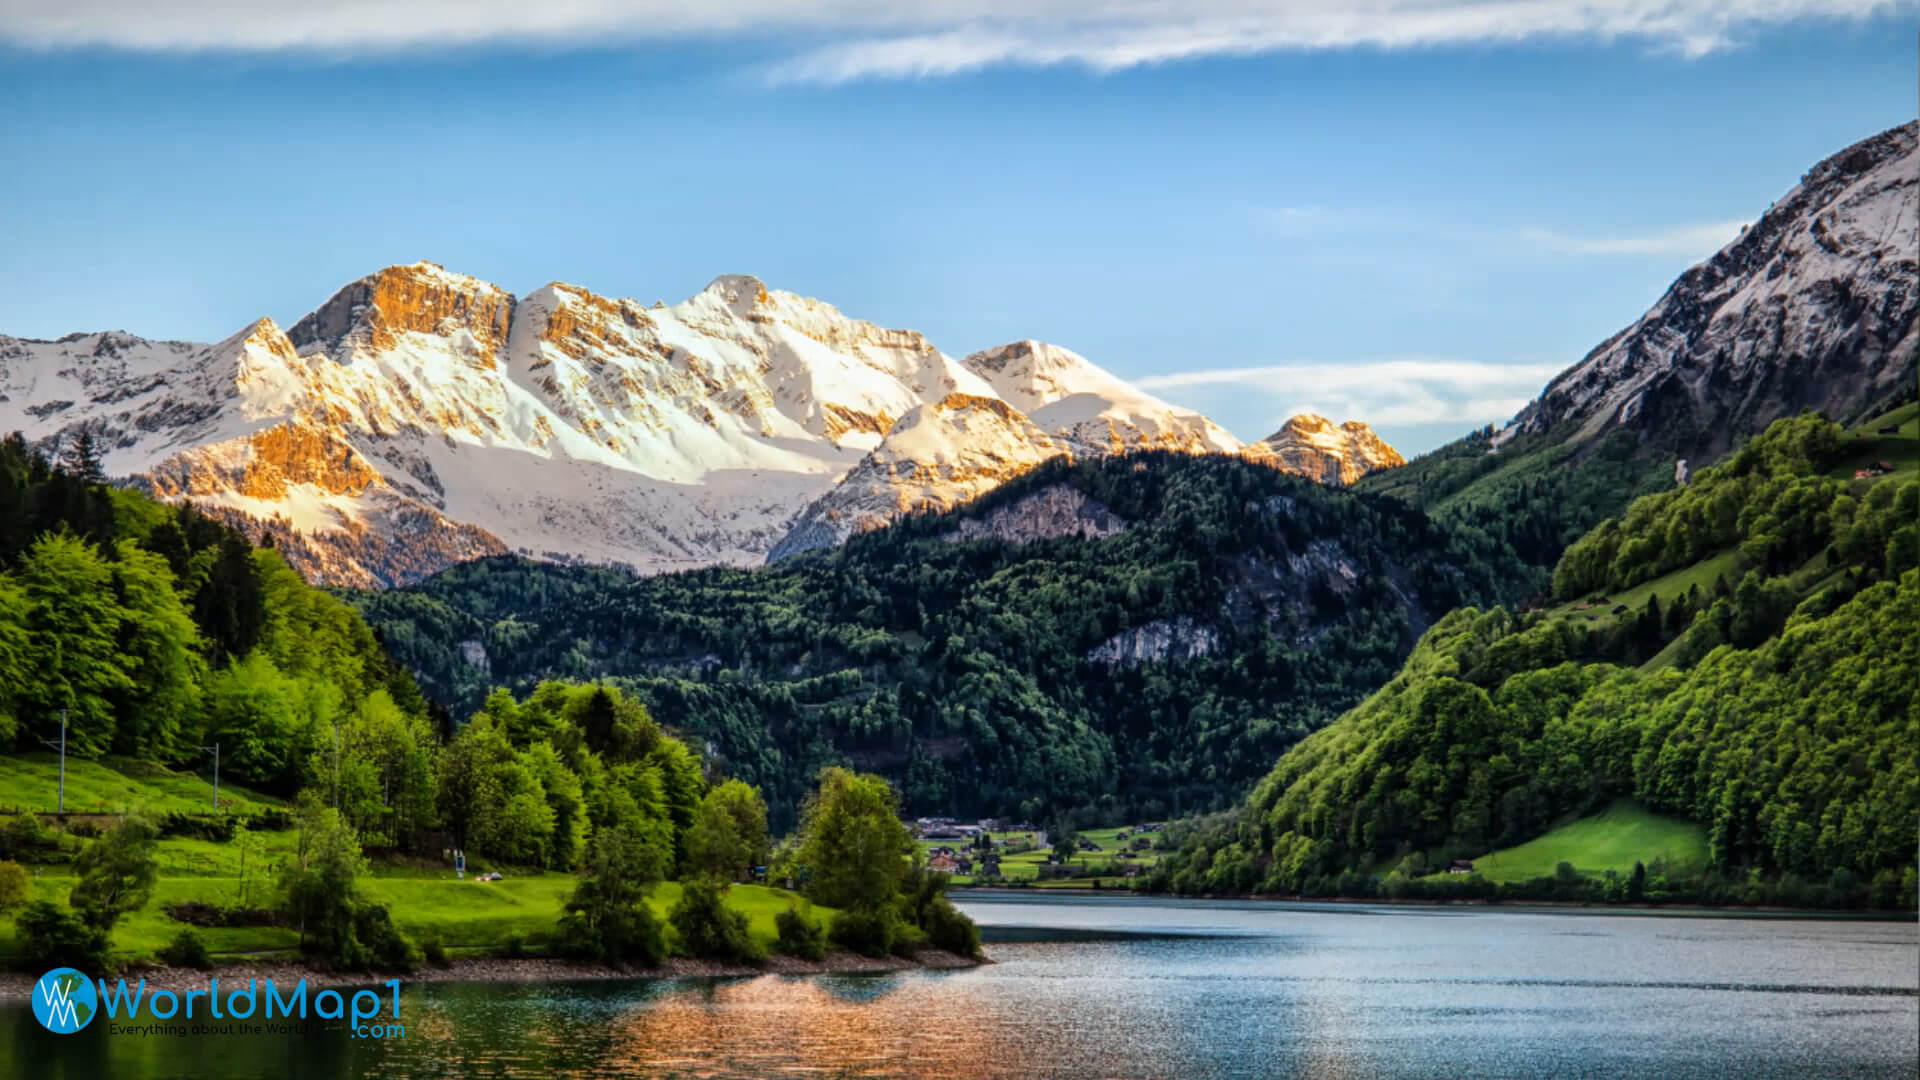 Leman Lake and Swiss Alps